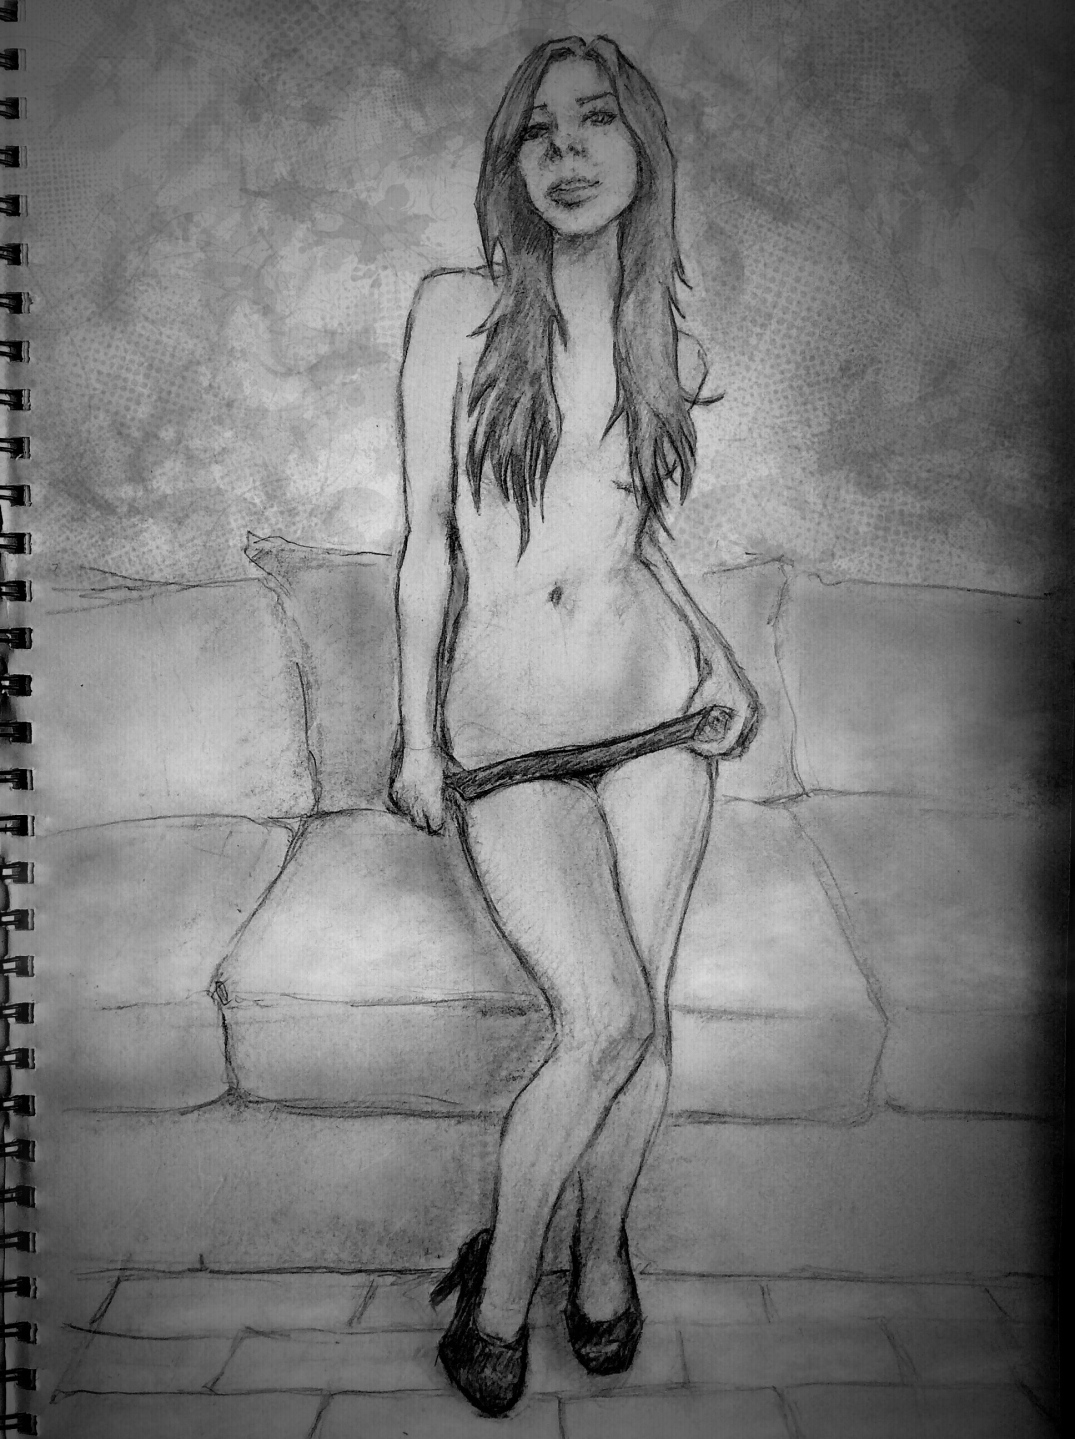 Nudist Life Drawing - February 2016 â€“ sketchbook